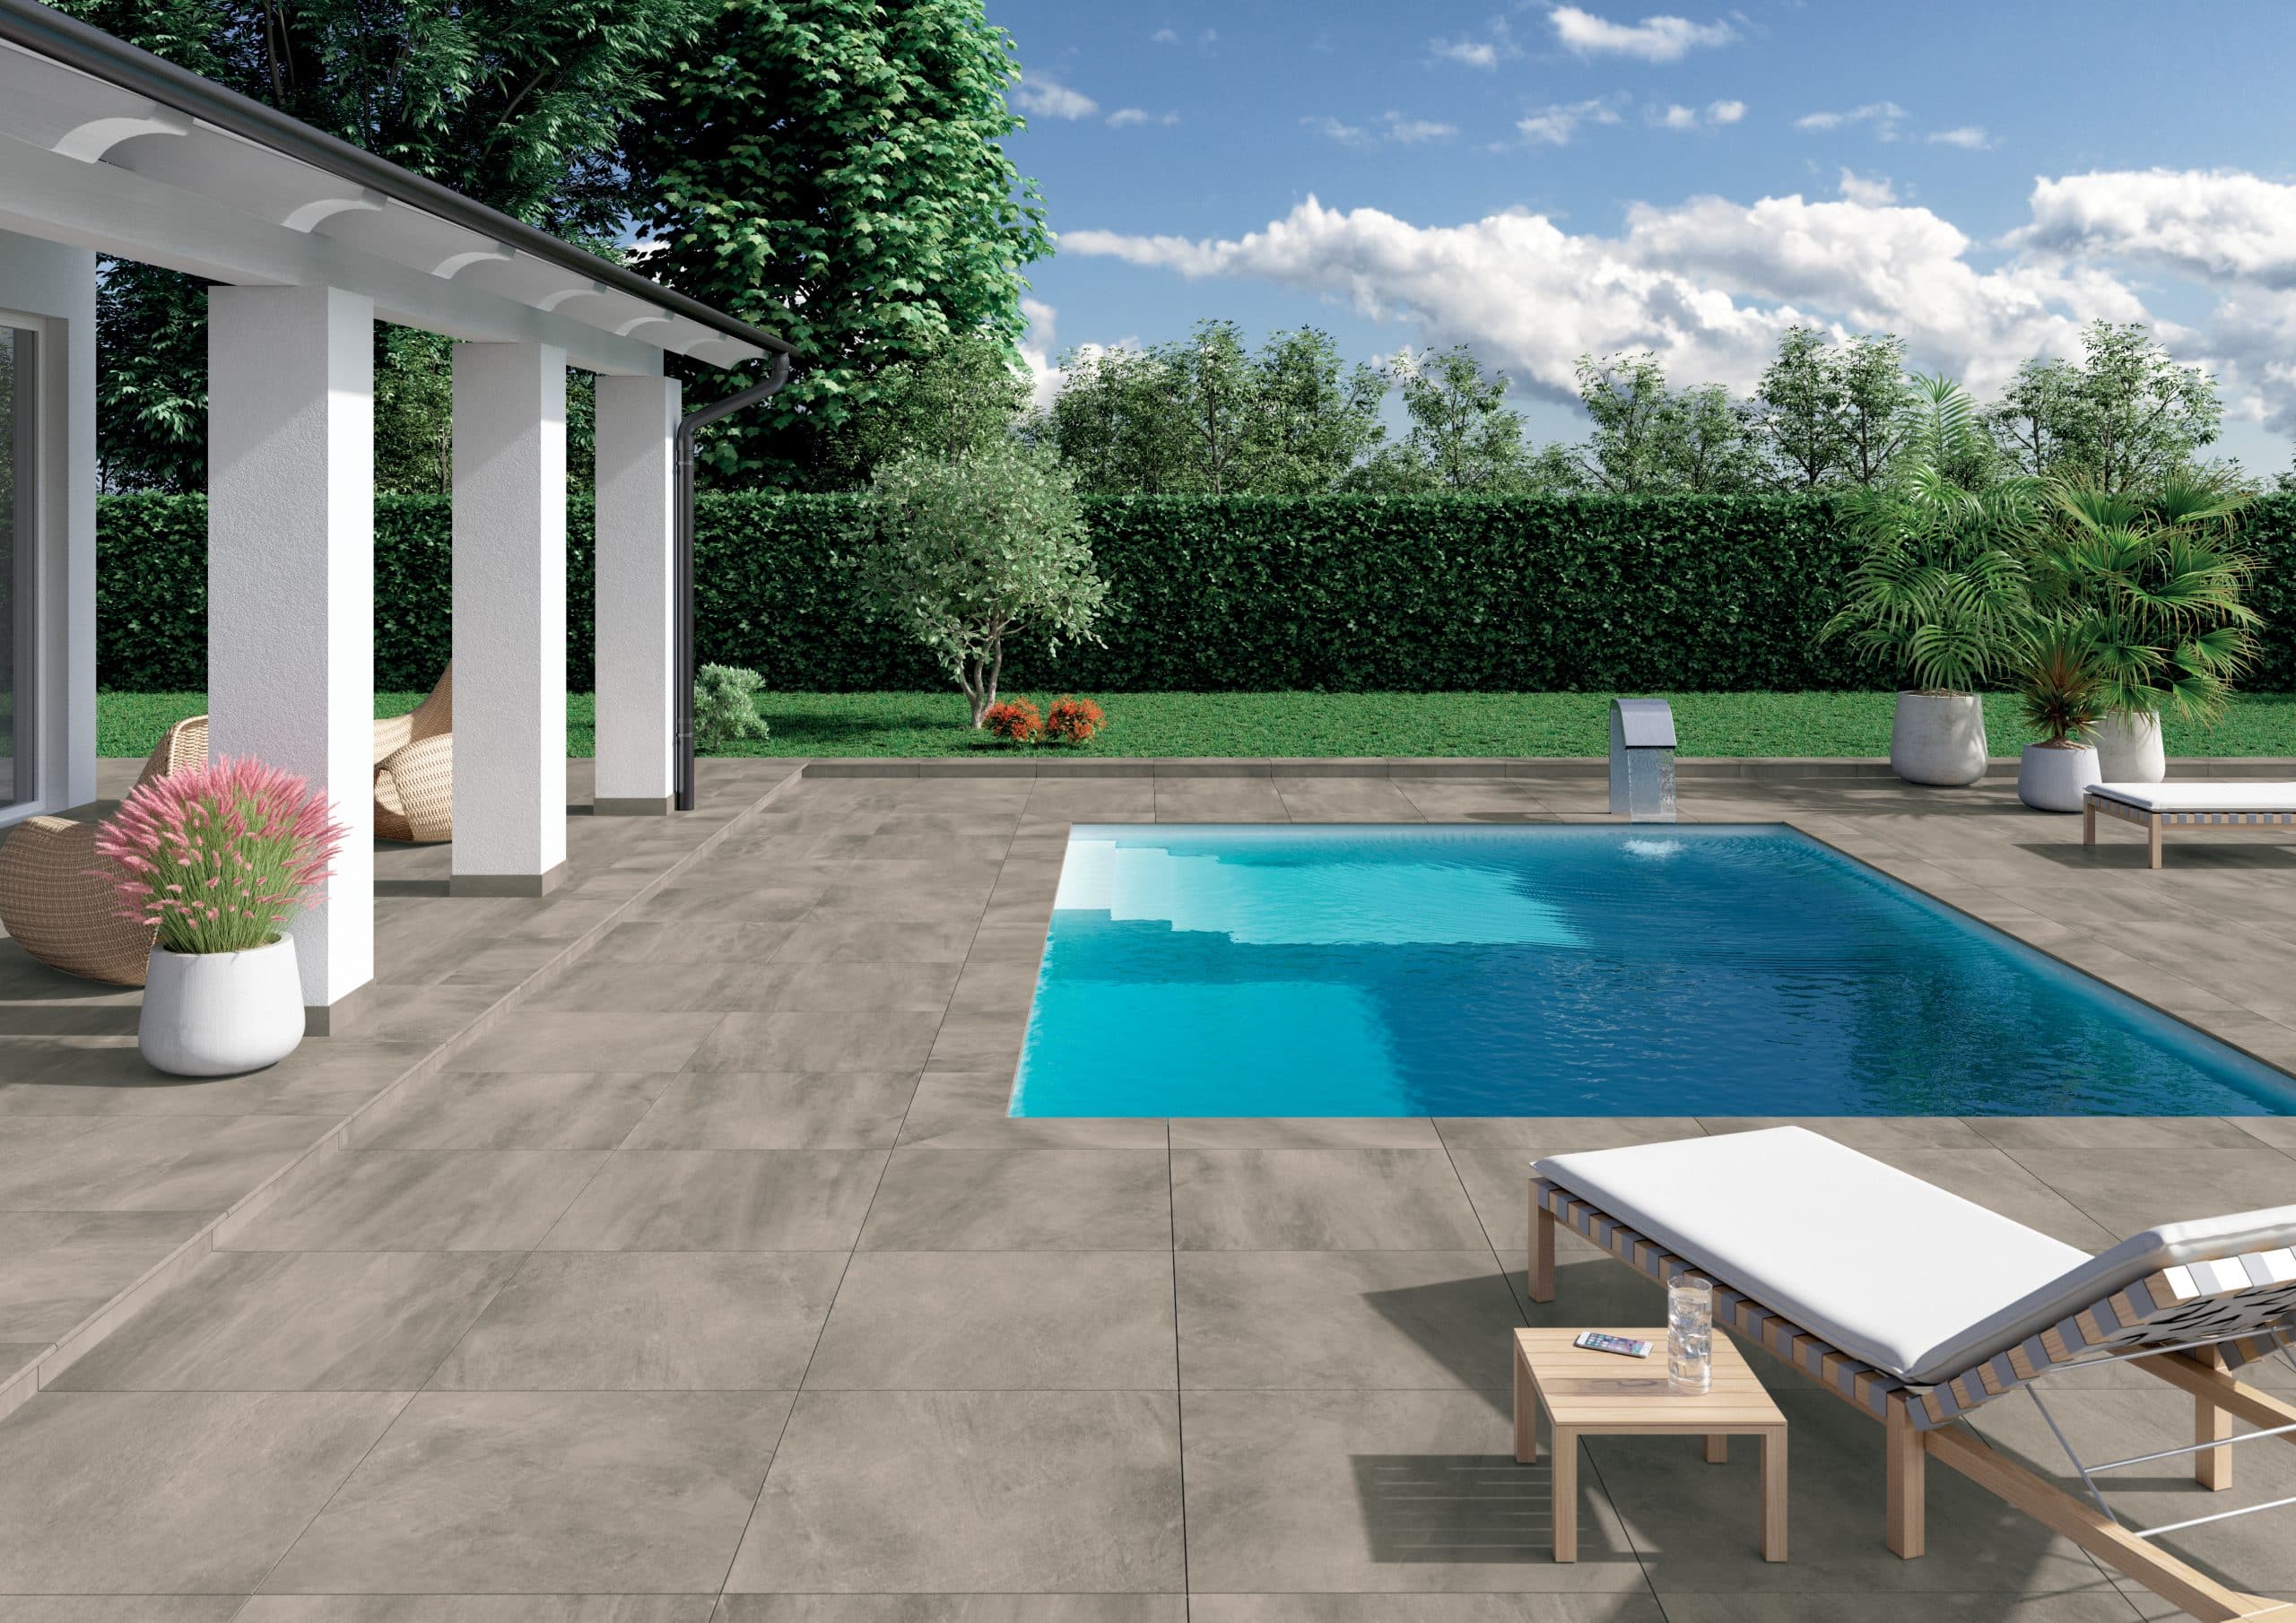 Fliesendorf zeigt eine große Außenanlage mit Pool, rundherum die großflächigen, grauen Fliesen in einem Garten, einer überdachte Terrasse in weiß.